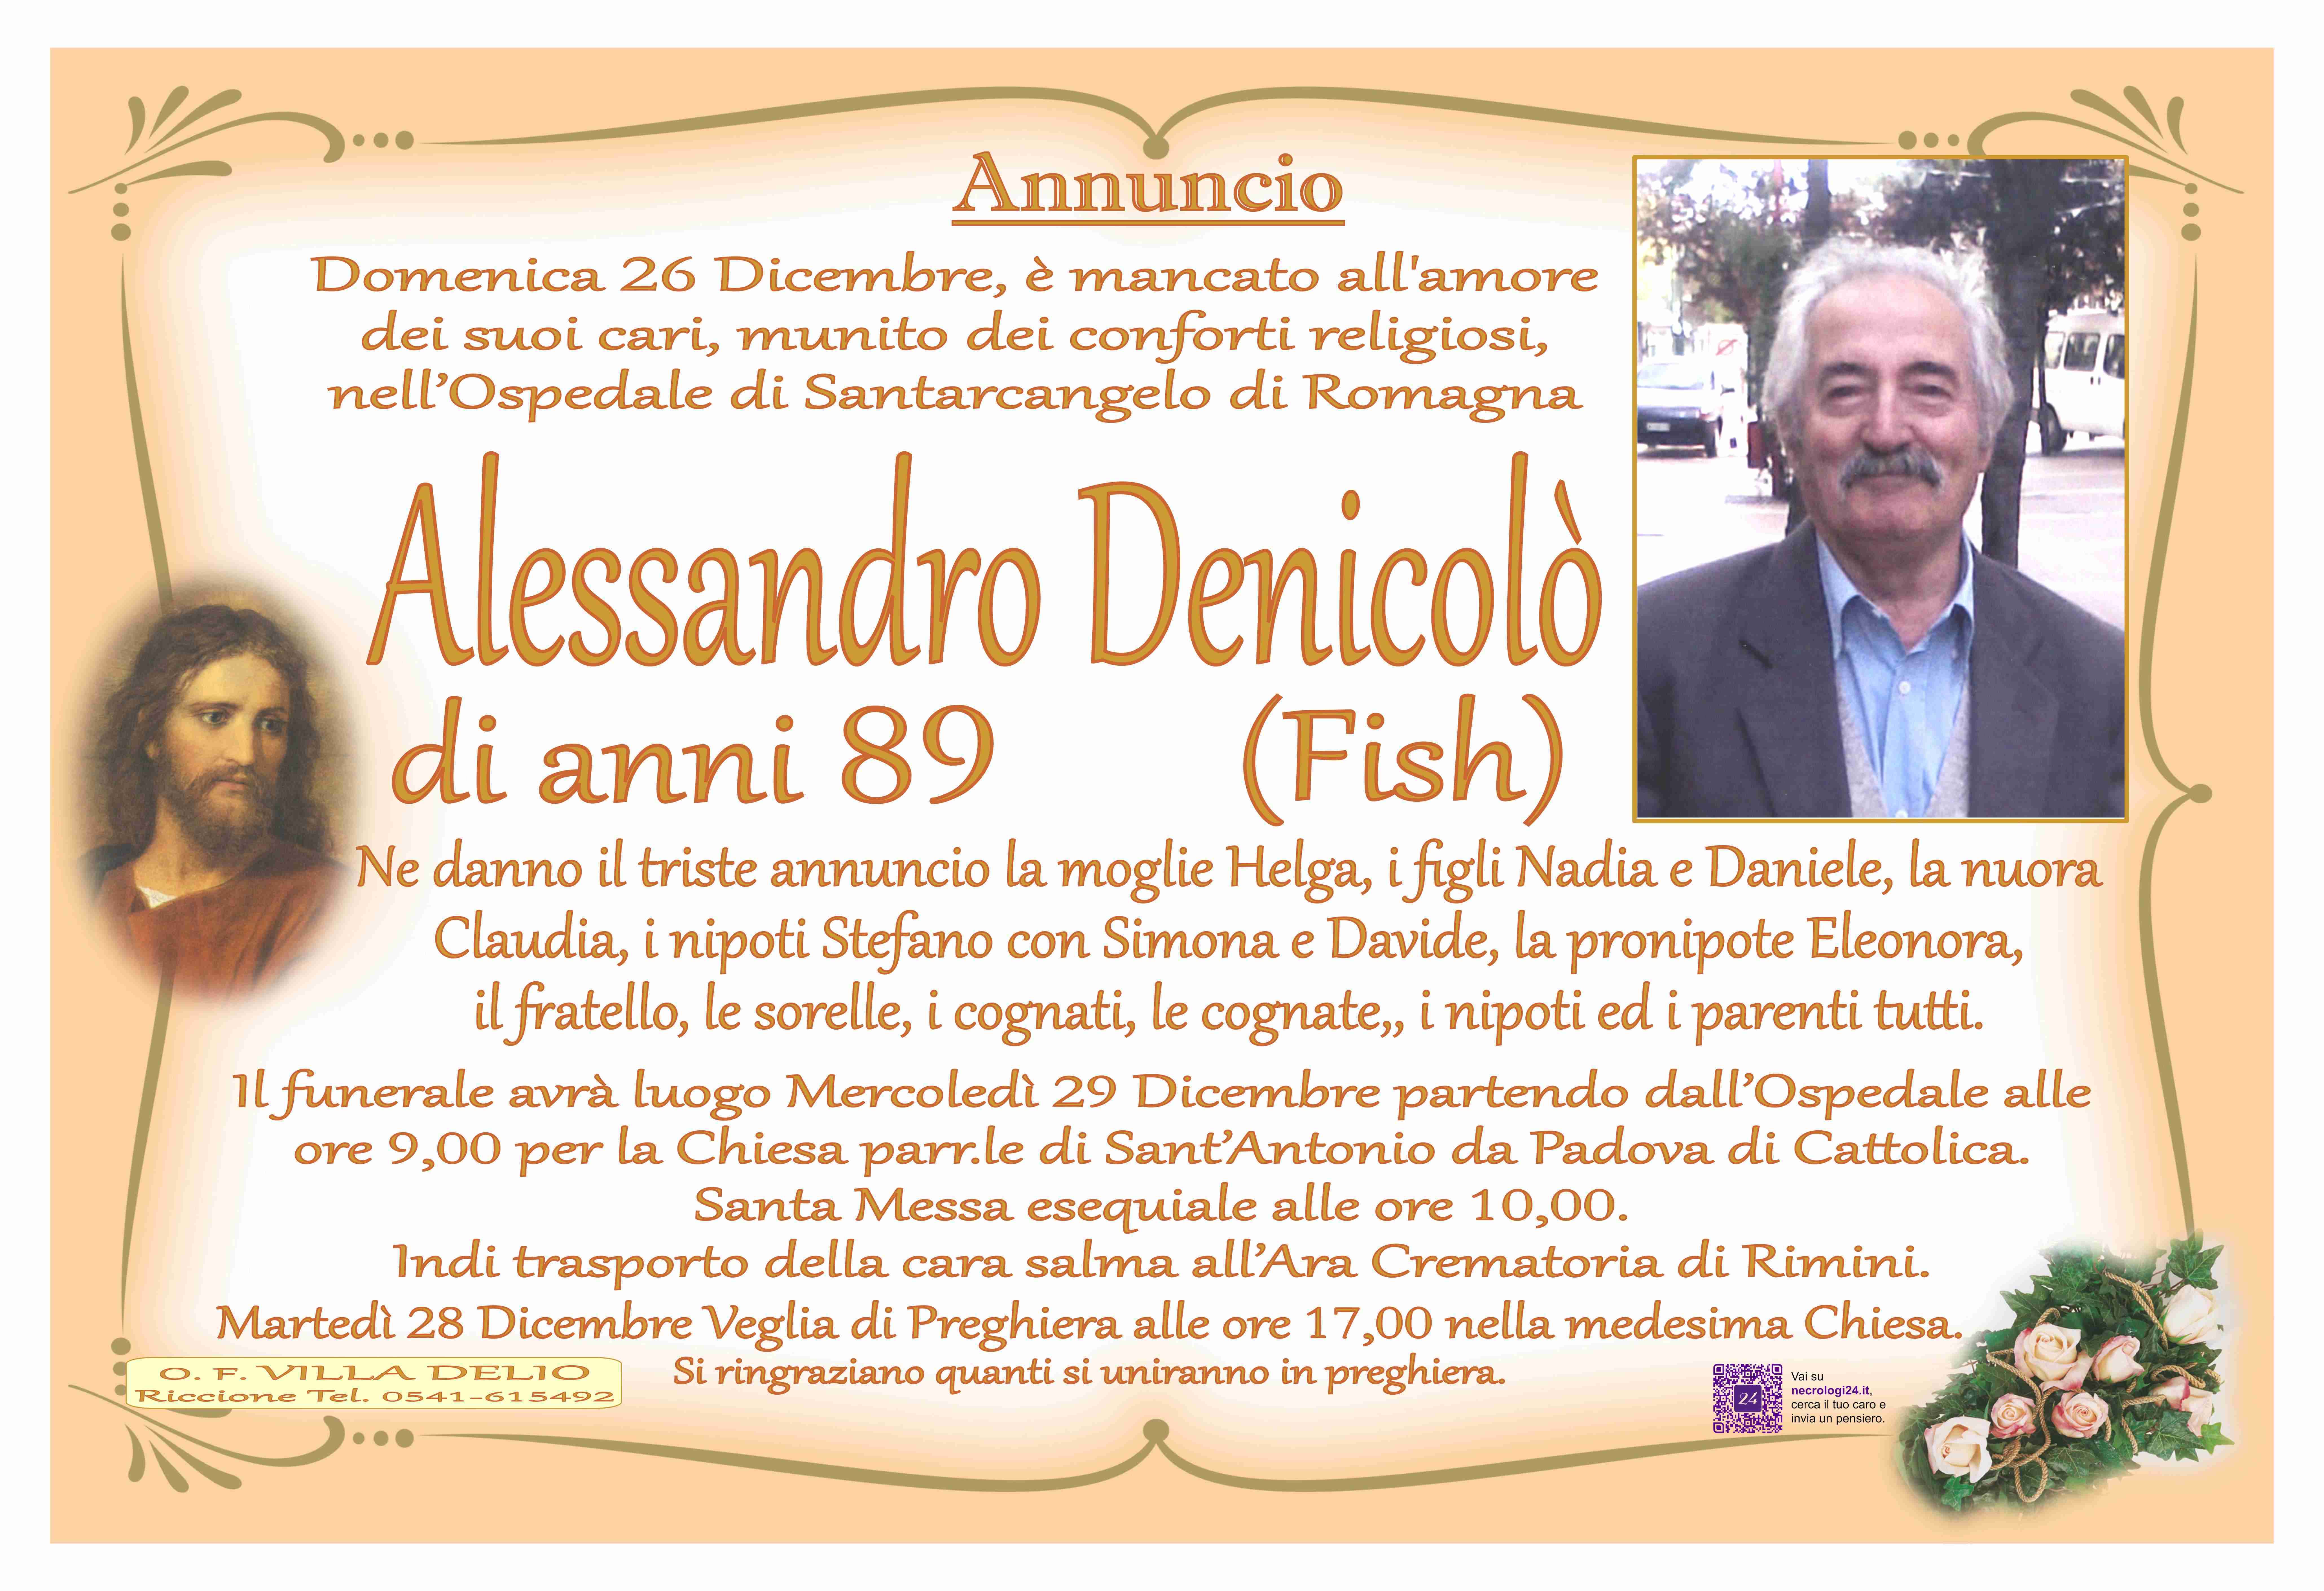 Alessandro Denicolò